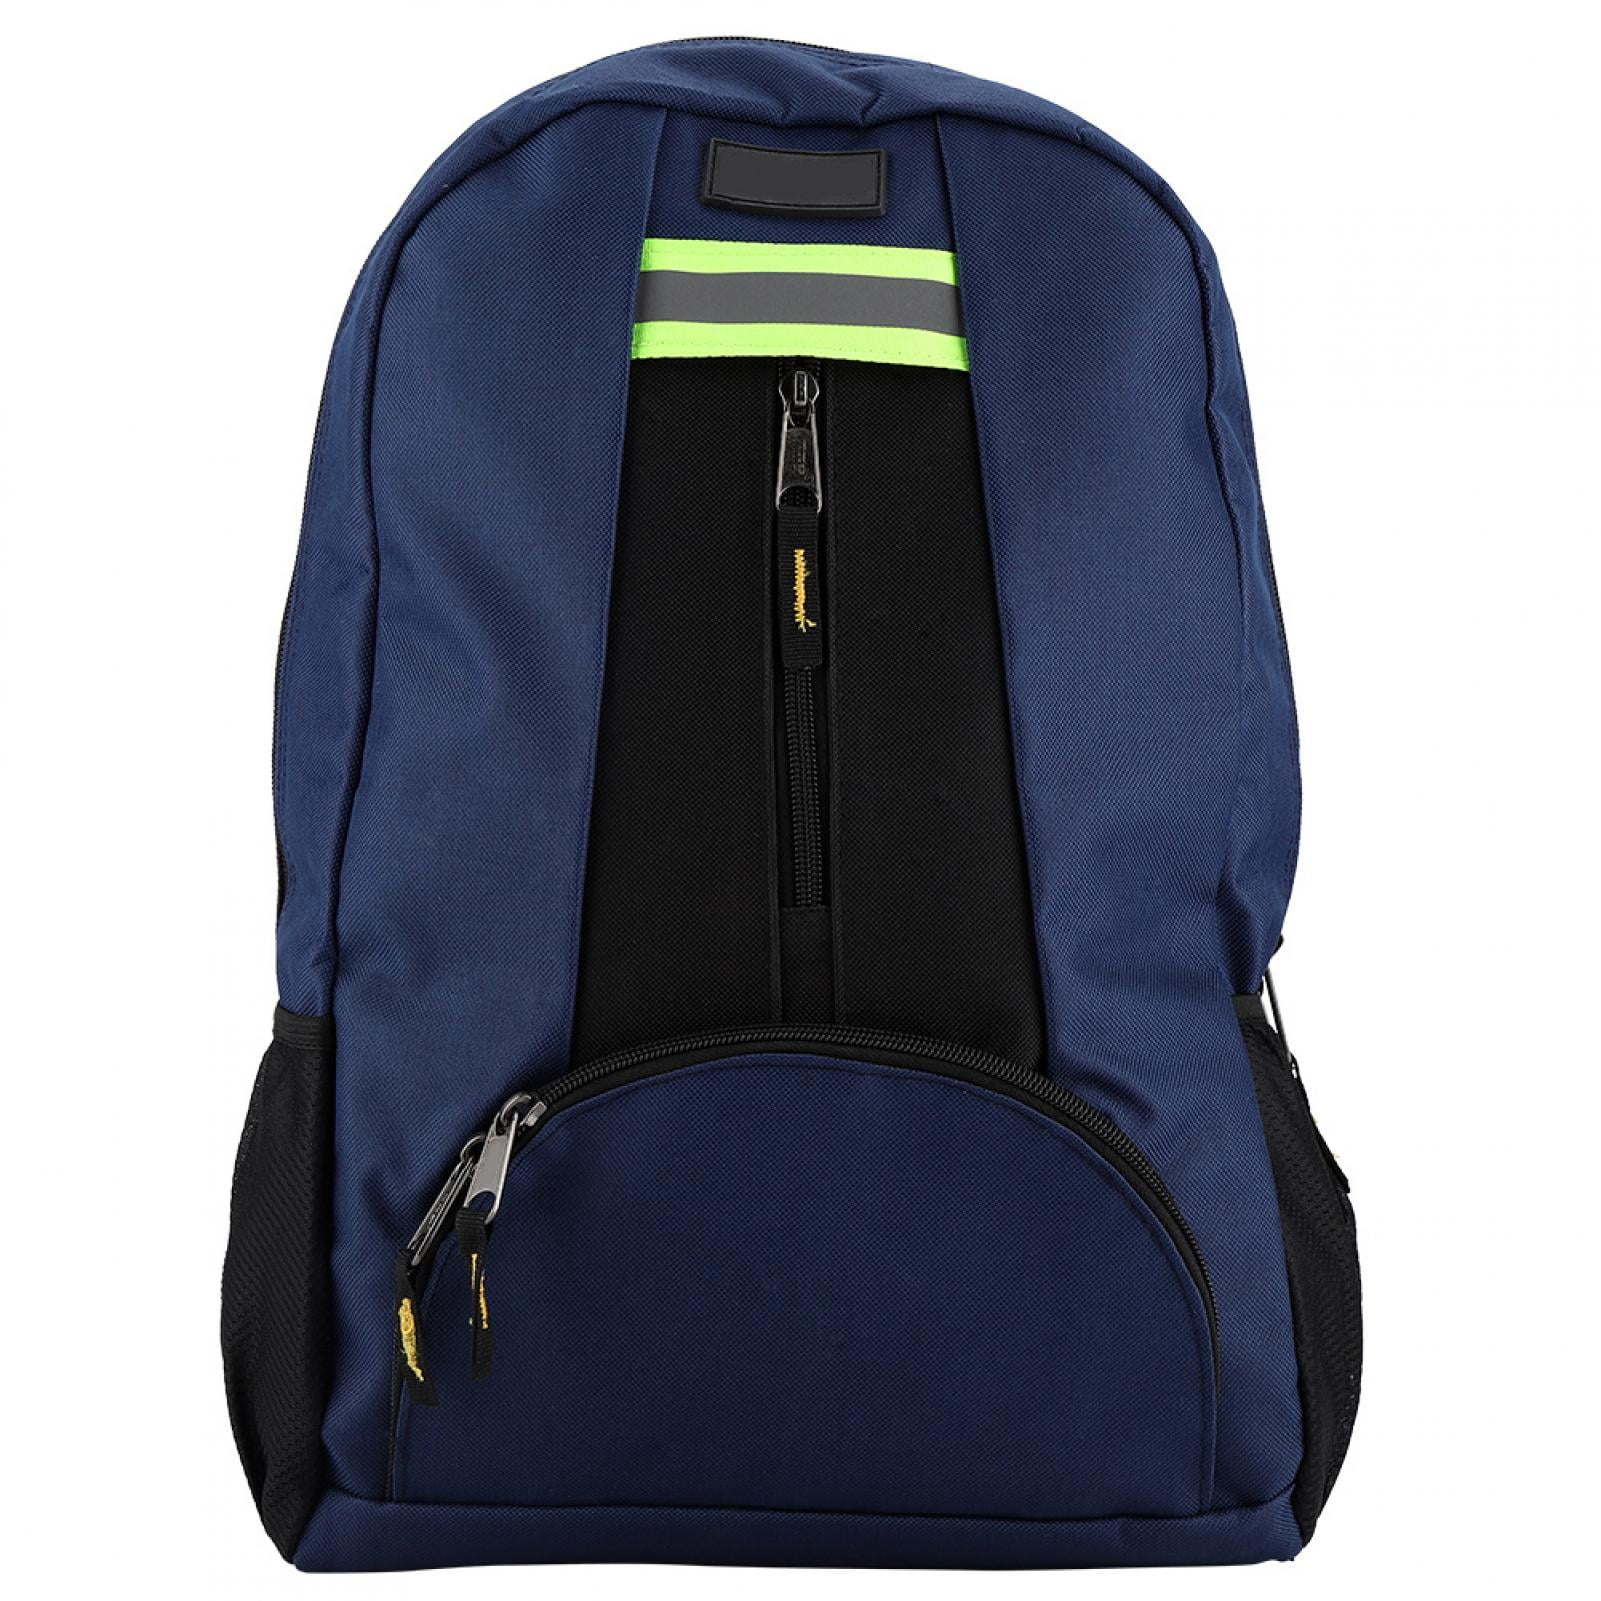 Waterproof Tools Wear Resistant Oxford Repair Tool Carrying Backpack Bag 2 Color 